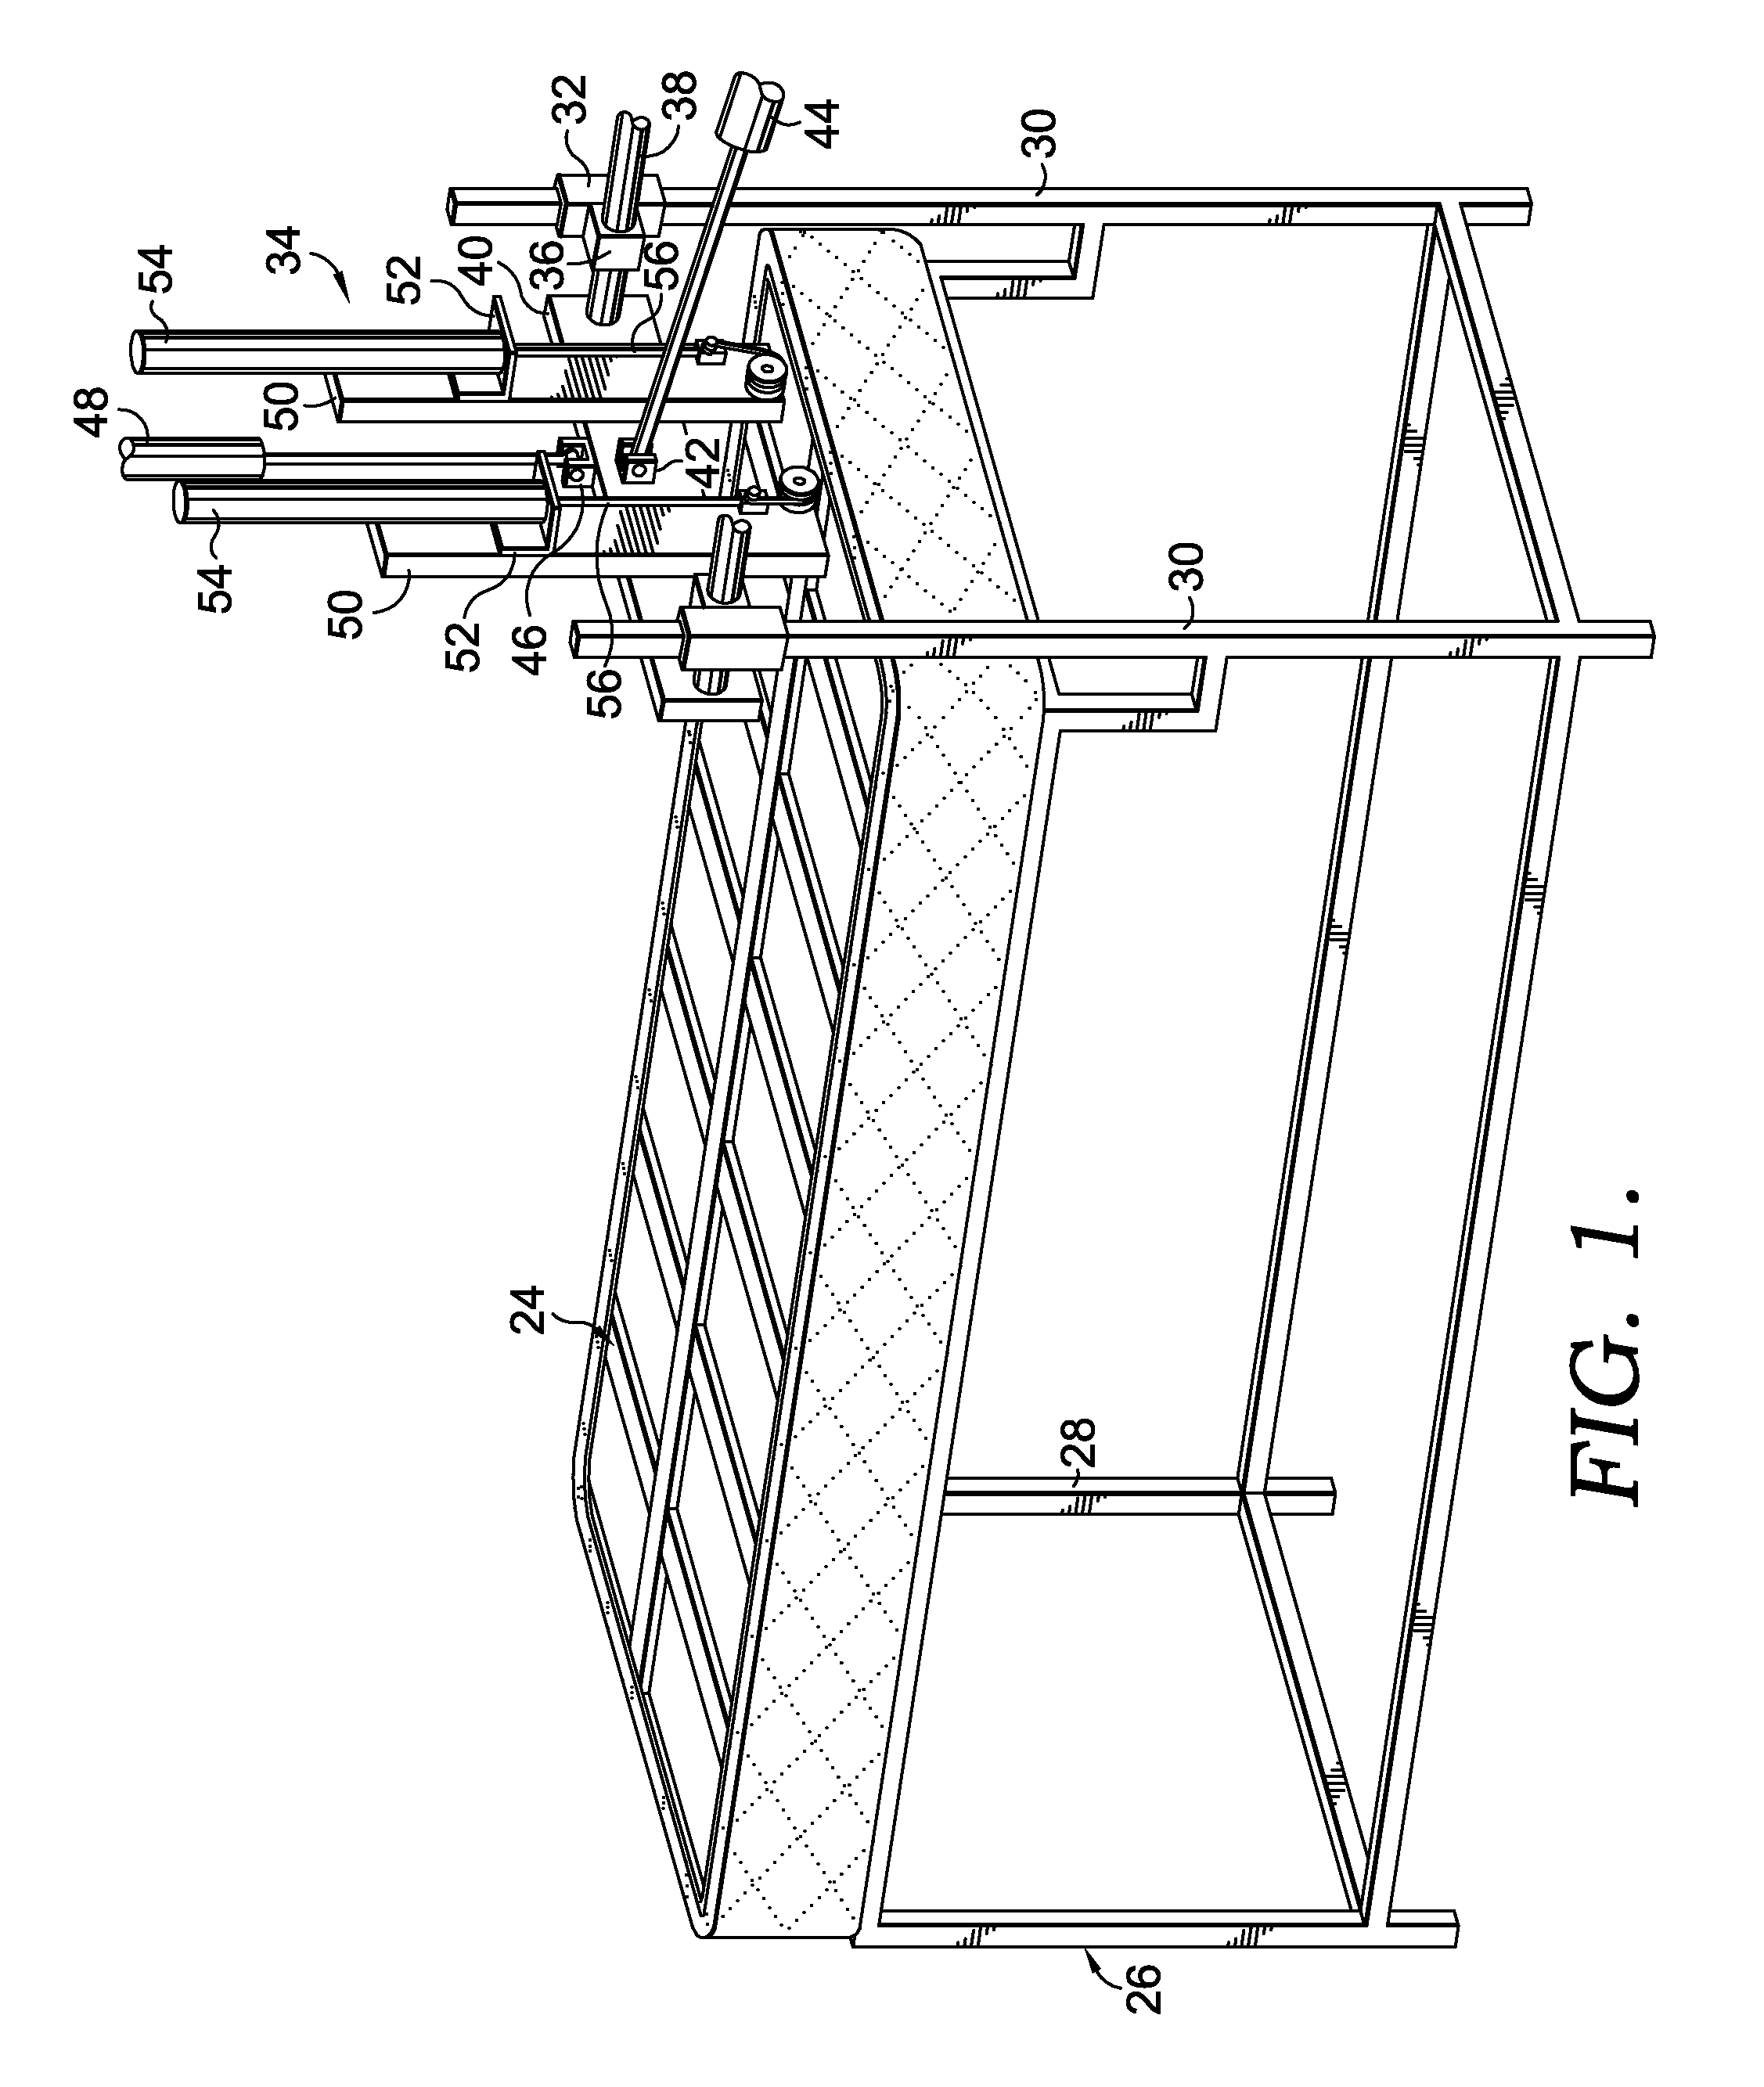 Method for upholstering box springs